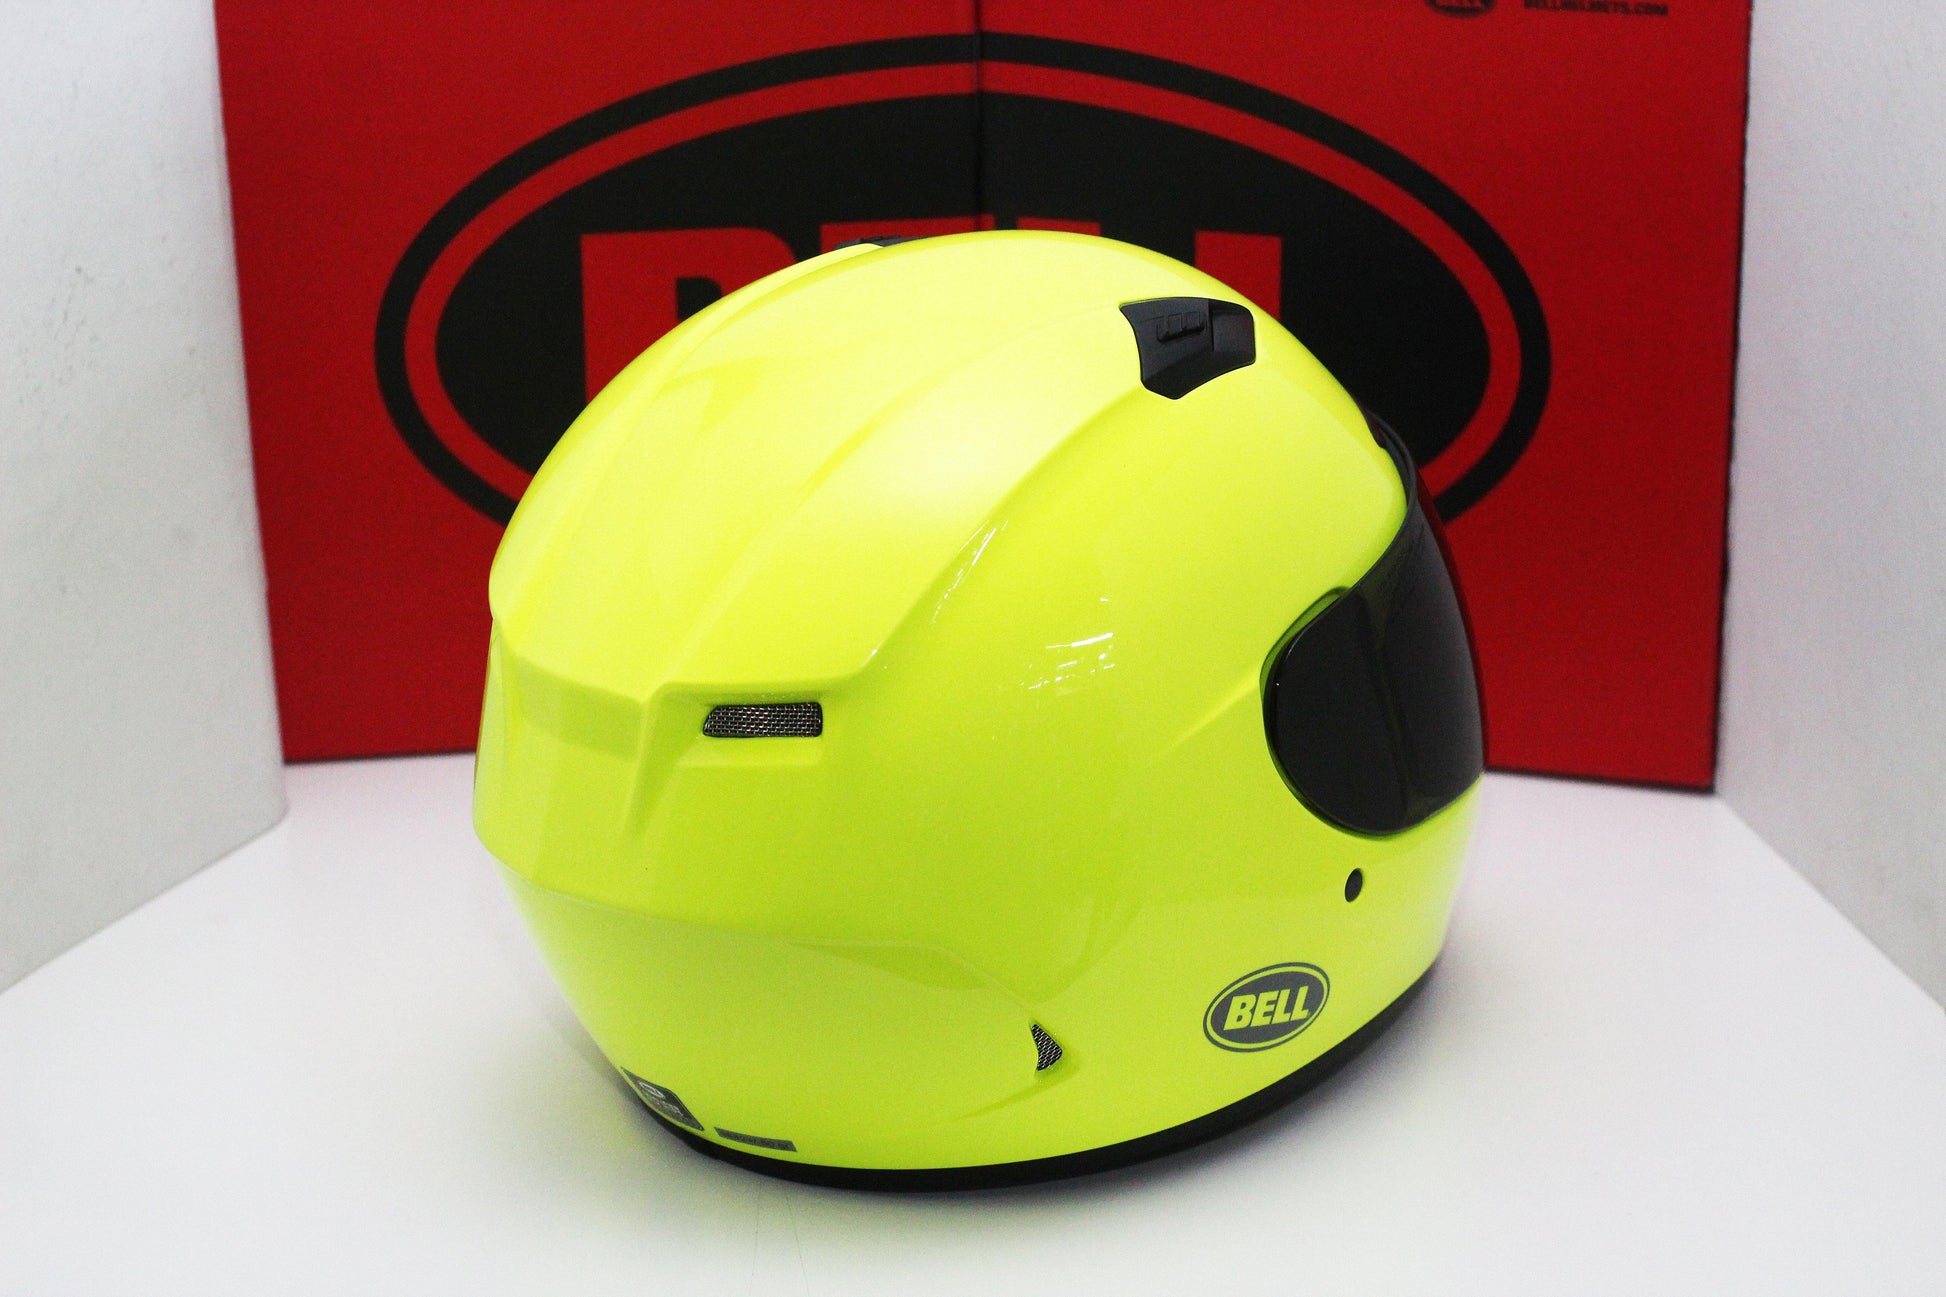 Bell Qualifier DLX MIPS (Hi-Viz Yellow) - Durian Bikers